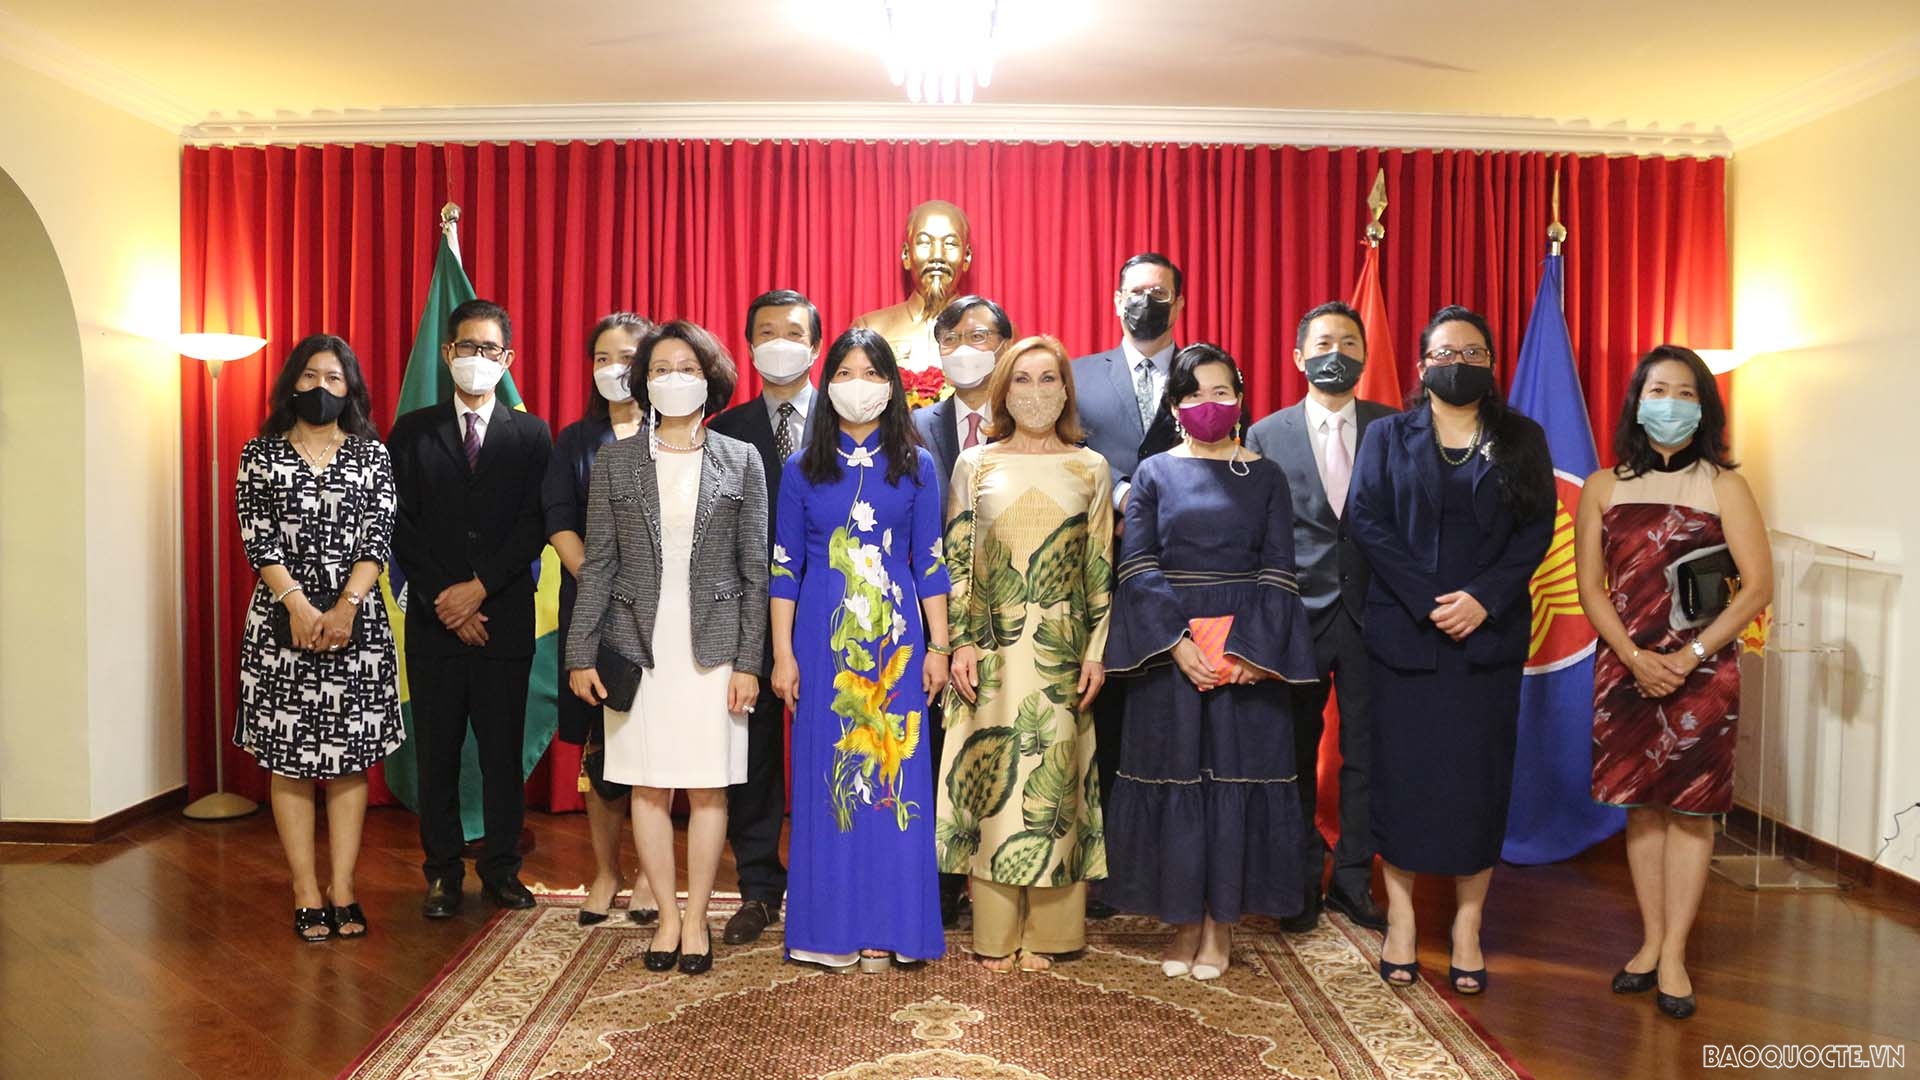 Đại sứ Phạm Thị Kim Hoa và Đại sứ các nước ASEAN tại Brazil chụp ảnh lưu niệm.